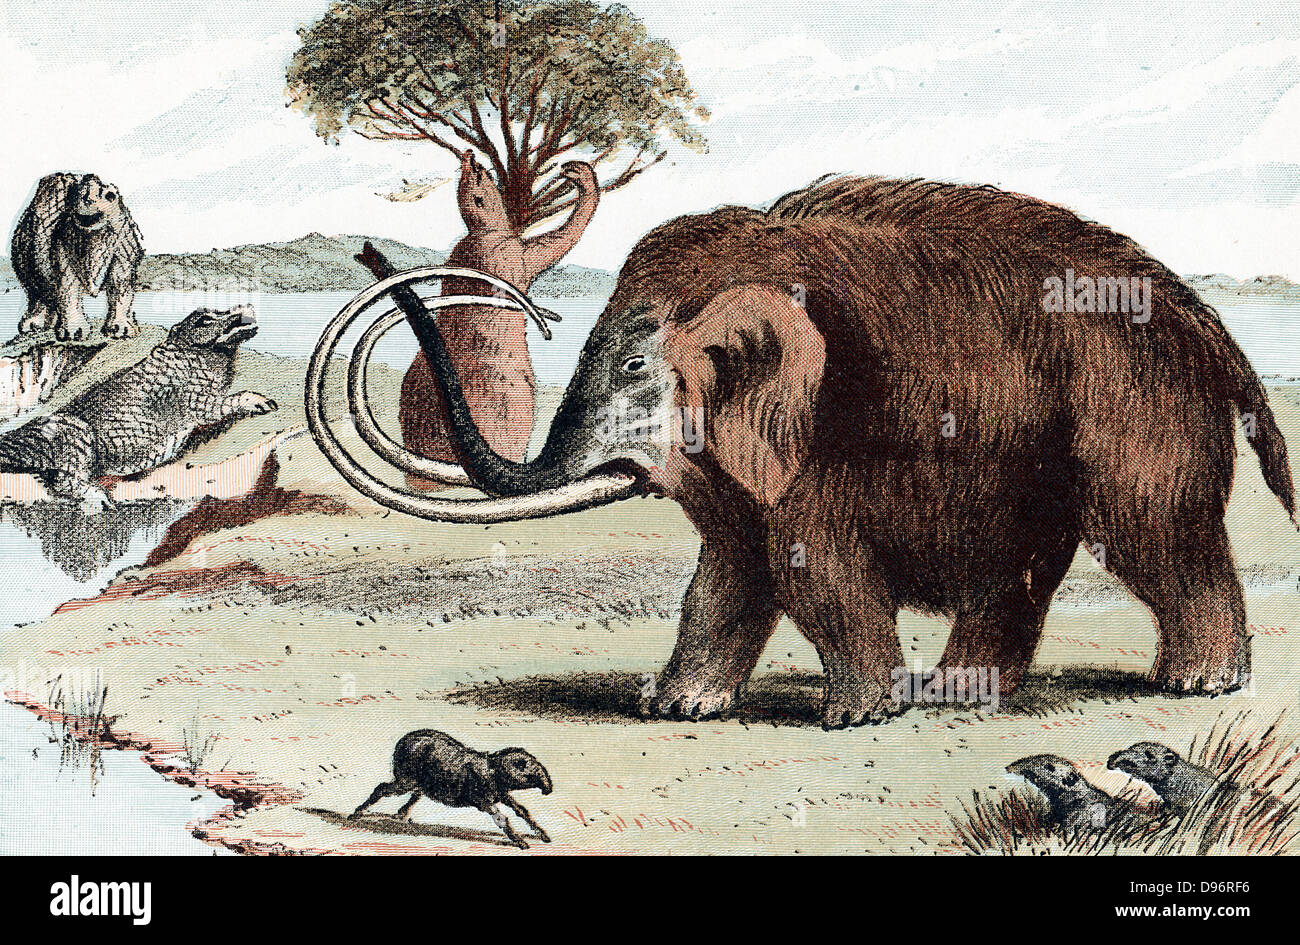 Mammuts (mammuthus) ausgestorbene Gattung der Elefant aus dem Pleistozän (2.500.000 bis 10.000 Jahre vor heute) in fossilen Ablagerungen und in Nordeuropa als 30.000 Jahre alten gefroren Schlachtkörper in schmelzenden Gletschern gefunden. Von beliebten Geologie Buch veröffentlicht, London 1892. Chromolithograph. Stockfoto